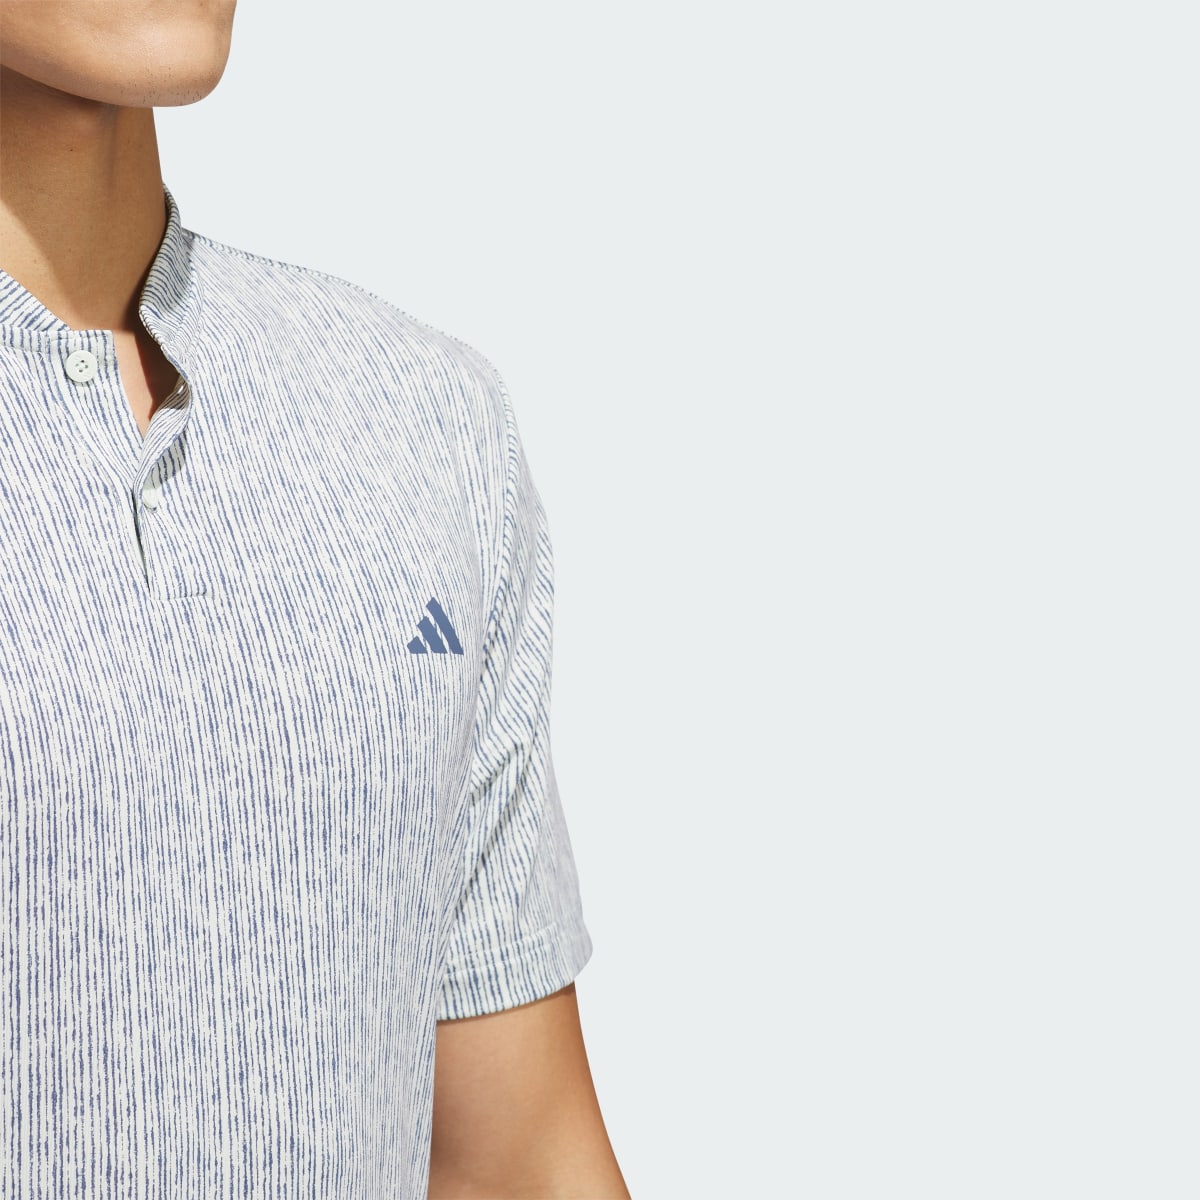 Adidas Ultimate365 Printed Polo Shirt. 7